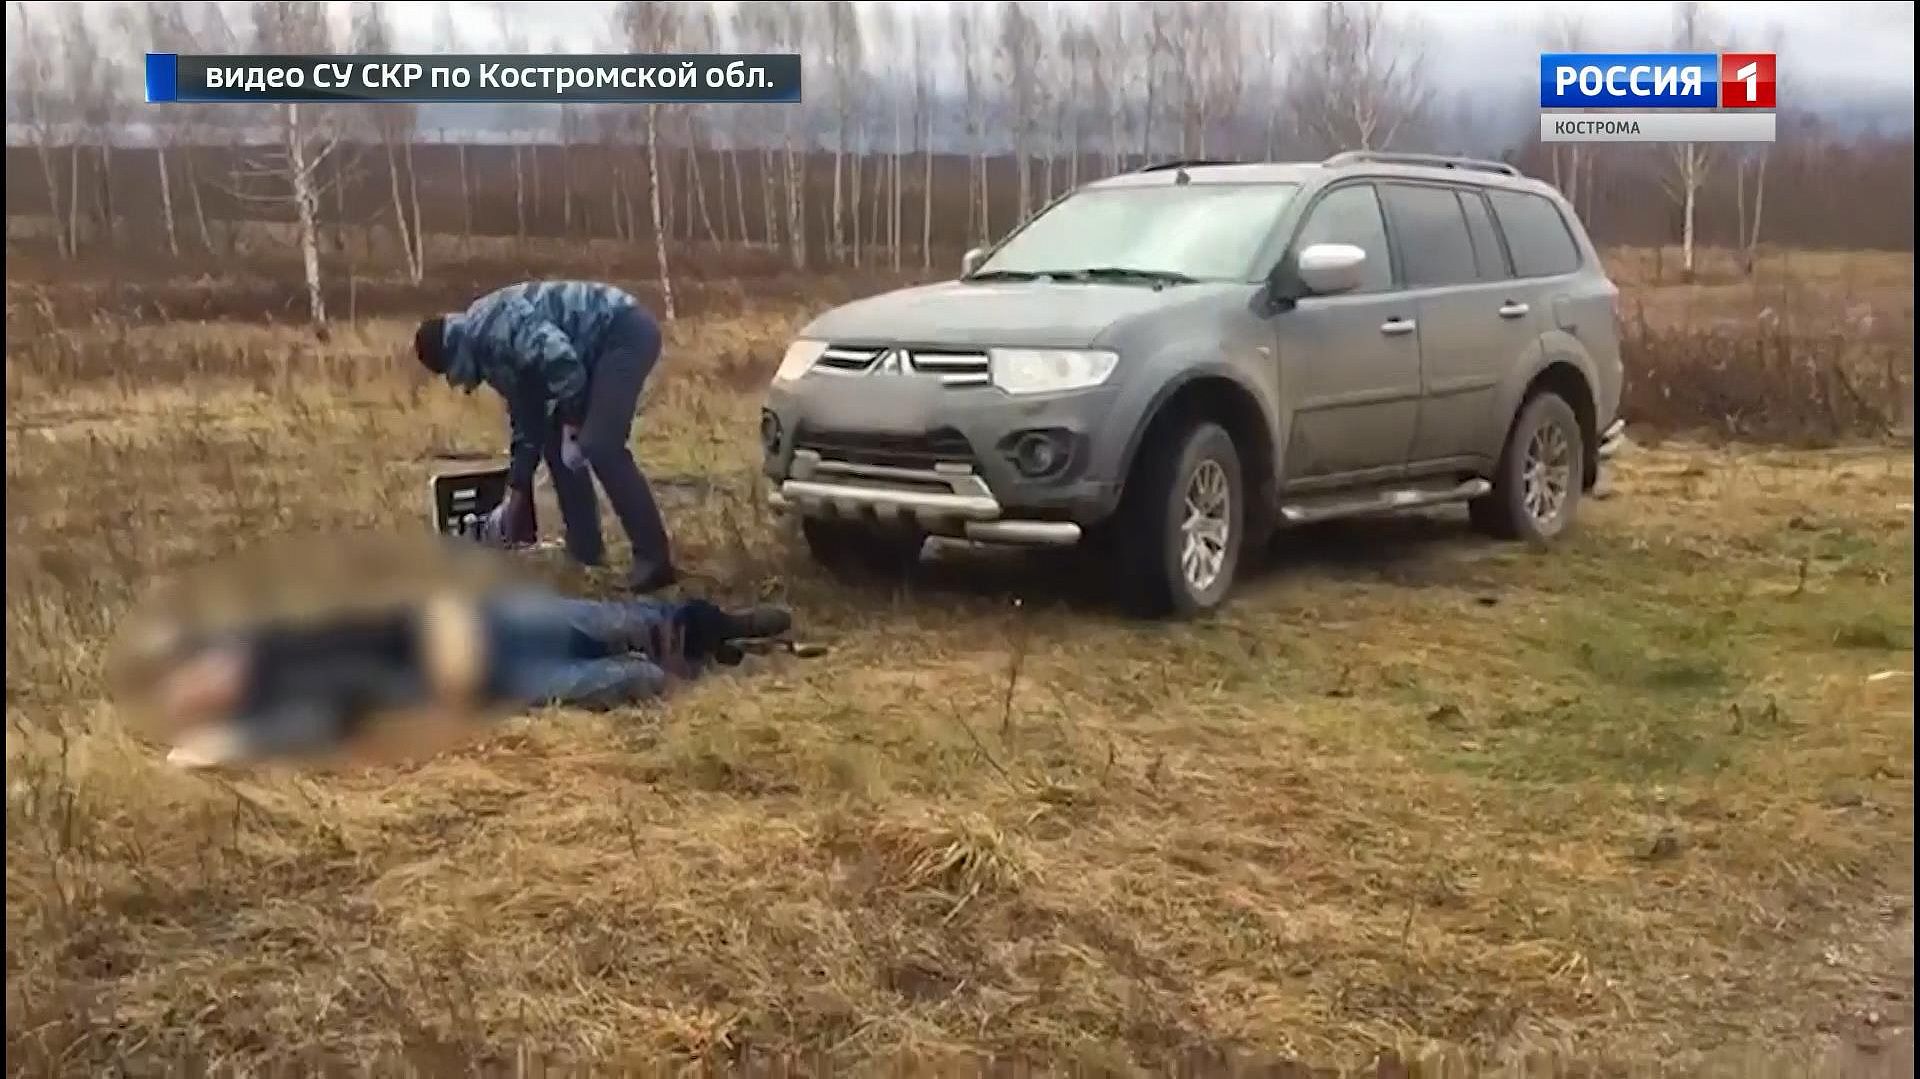 В Костромском районе найдено тело мужчины с огнестрельным ранением